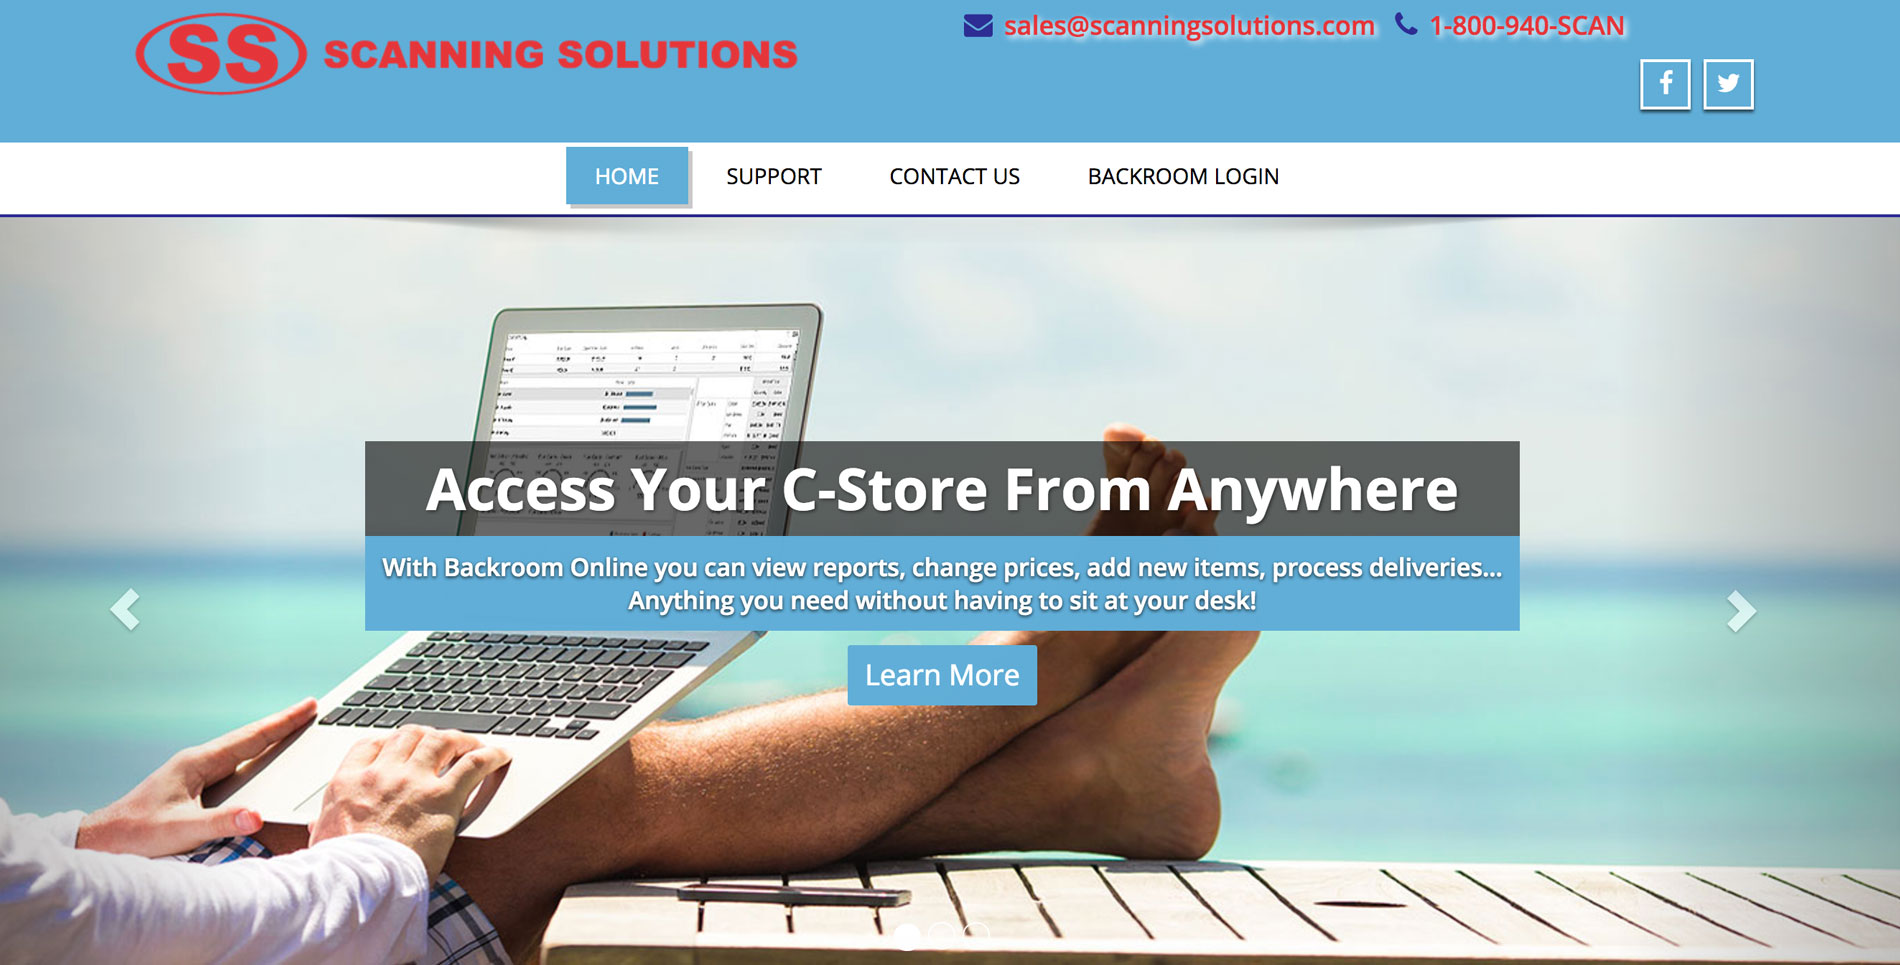 Scanning Solutions Website image